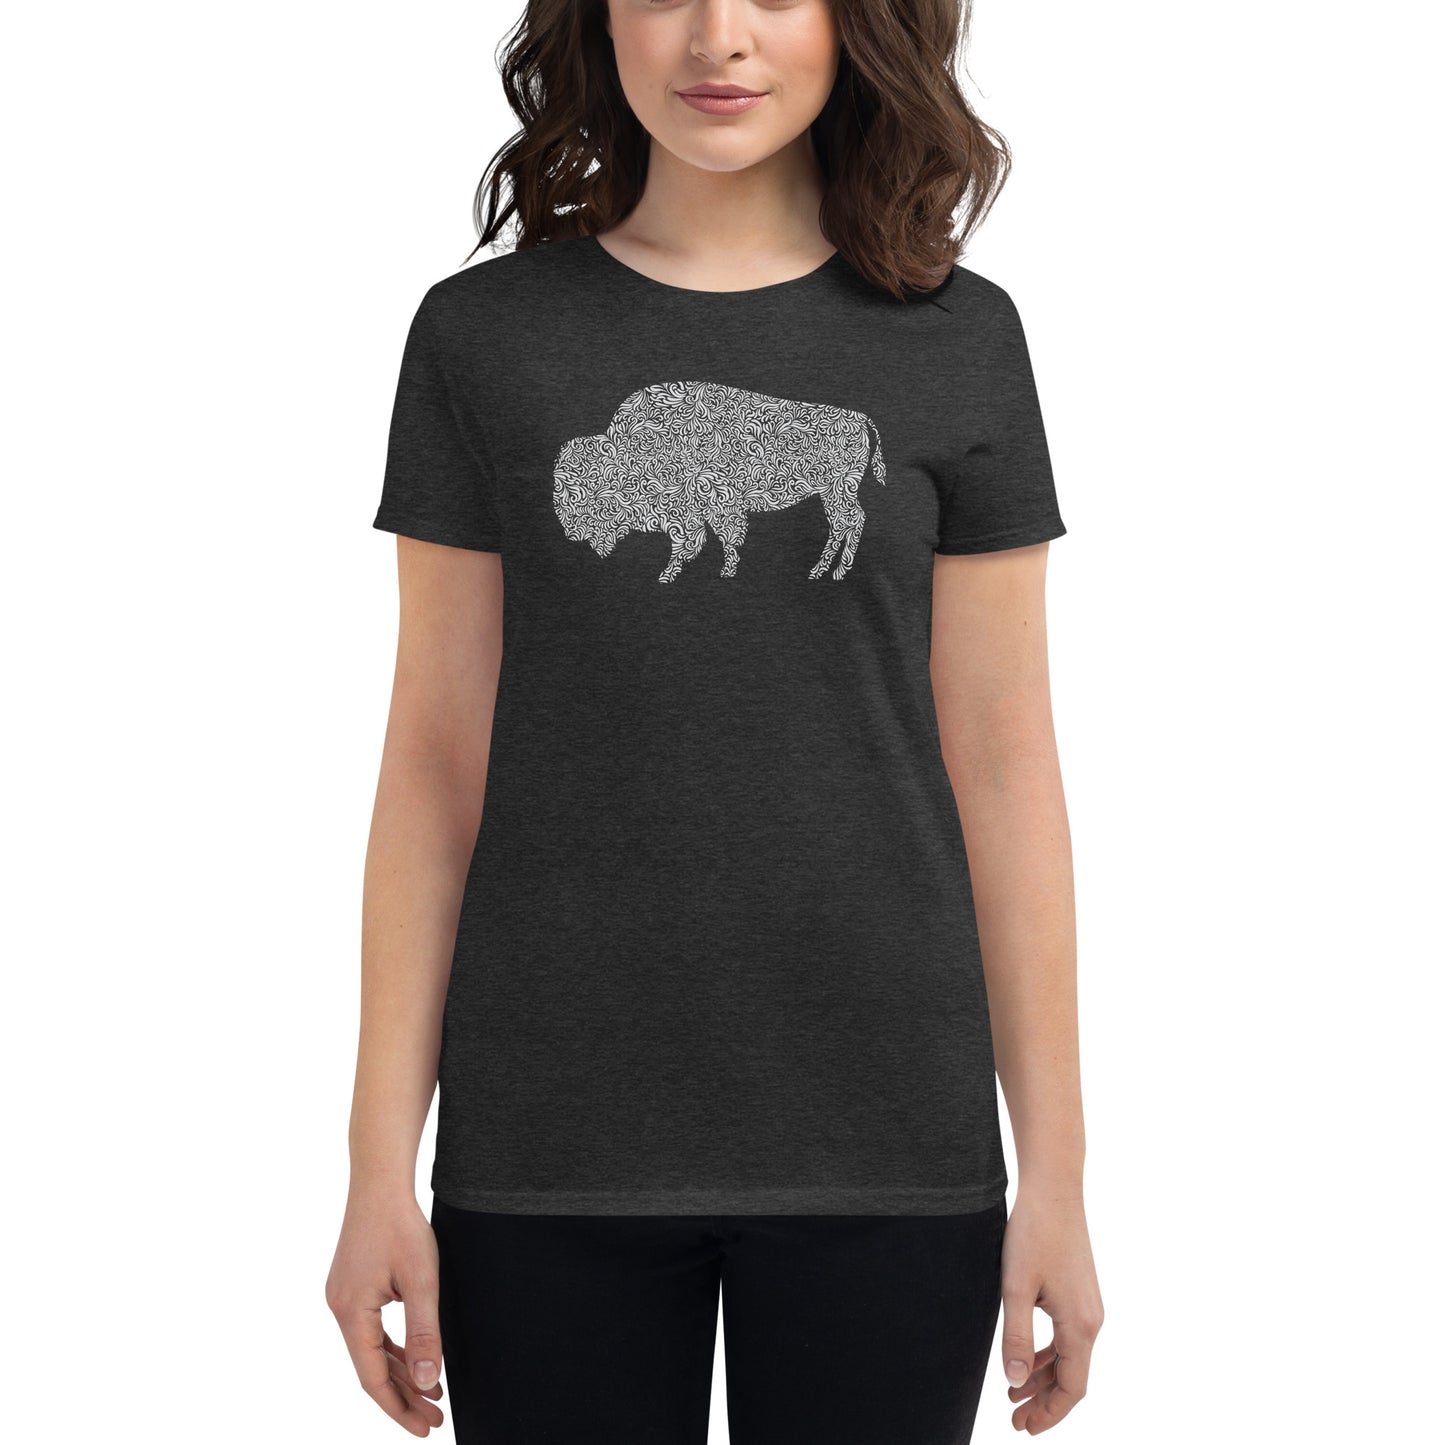 Women's Fashion Fit T-shirt - Floral Bison